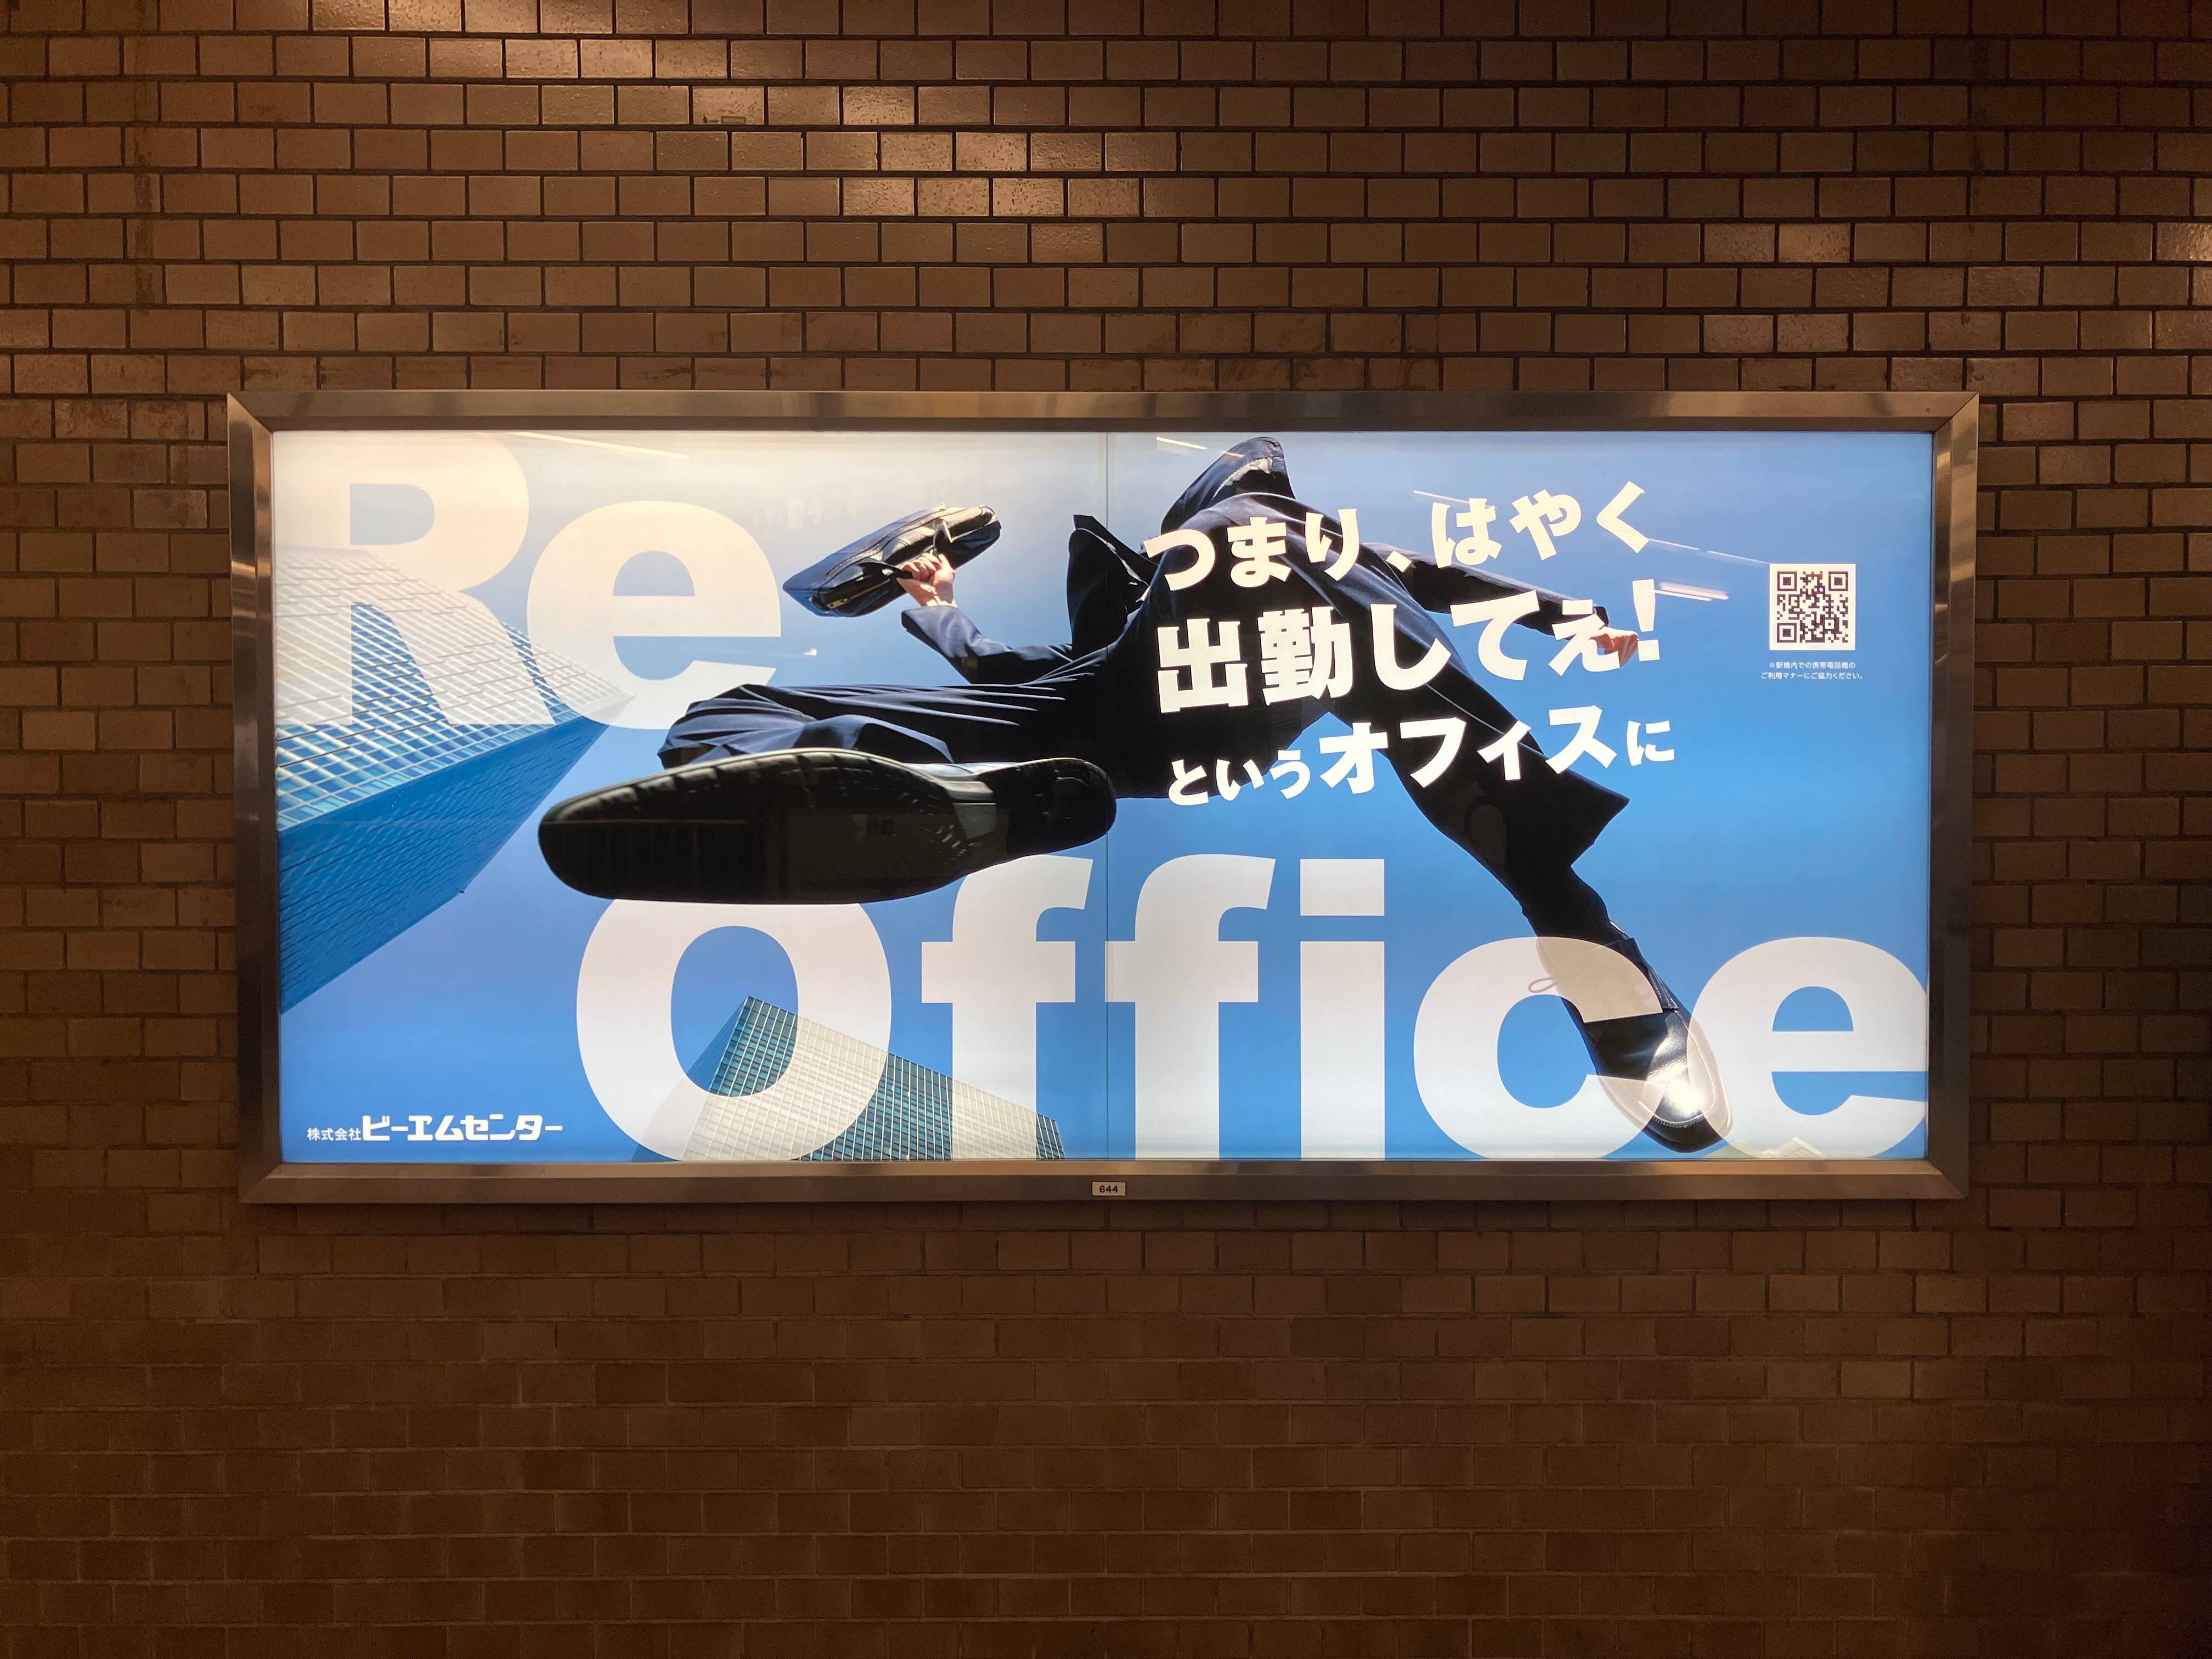 大阪メトロ 堺筋線「堺筋本町」駅 に駅看板掲載しました。